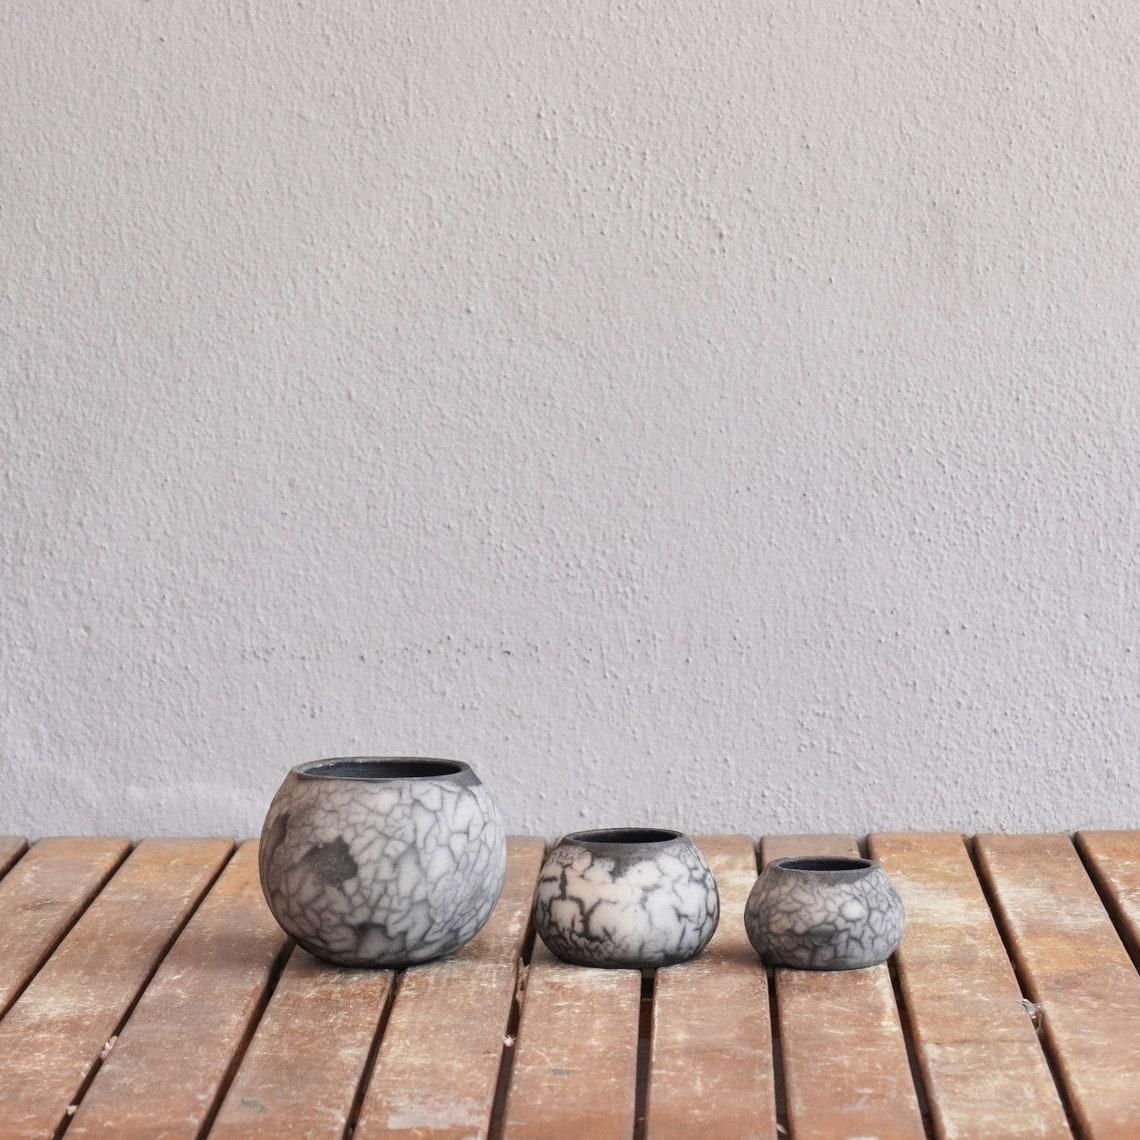 Malaysian Tsuchi Raku Mini Planter Pot Set of 3 - Smoked Raku - Handmade Ceramic For Sale